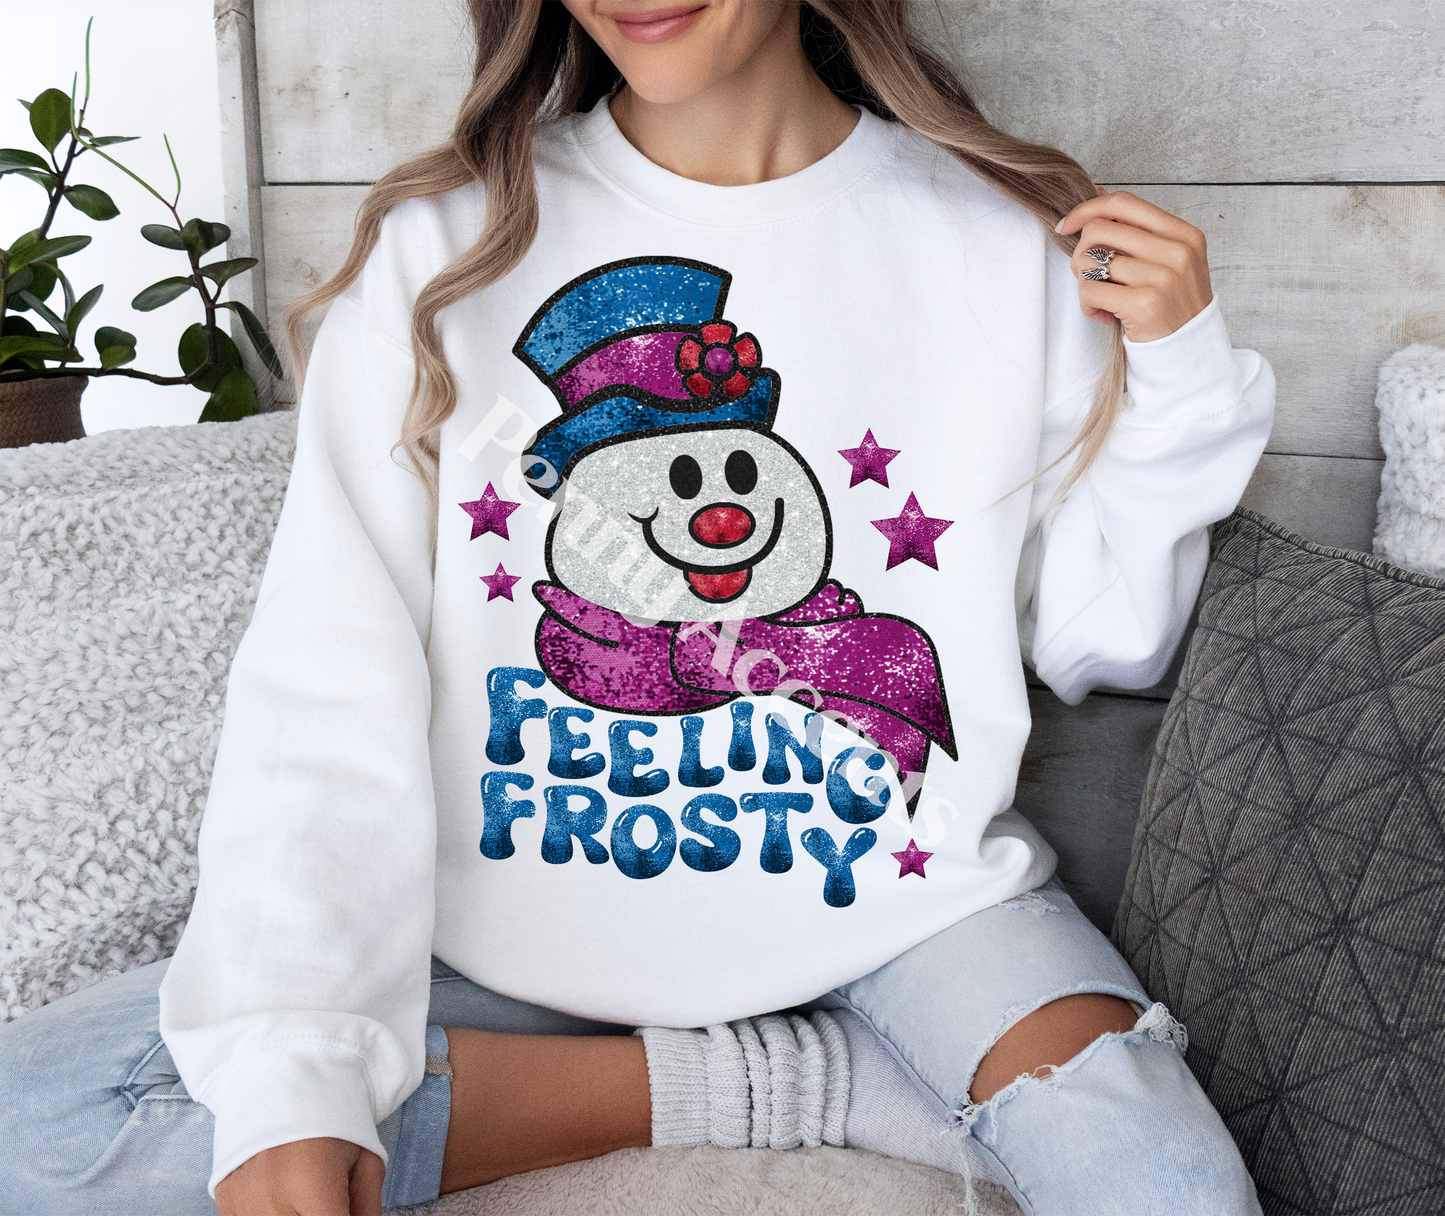 Feeling Frosty Shirt